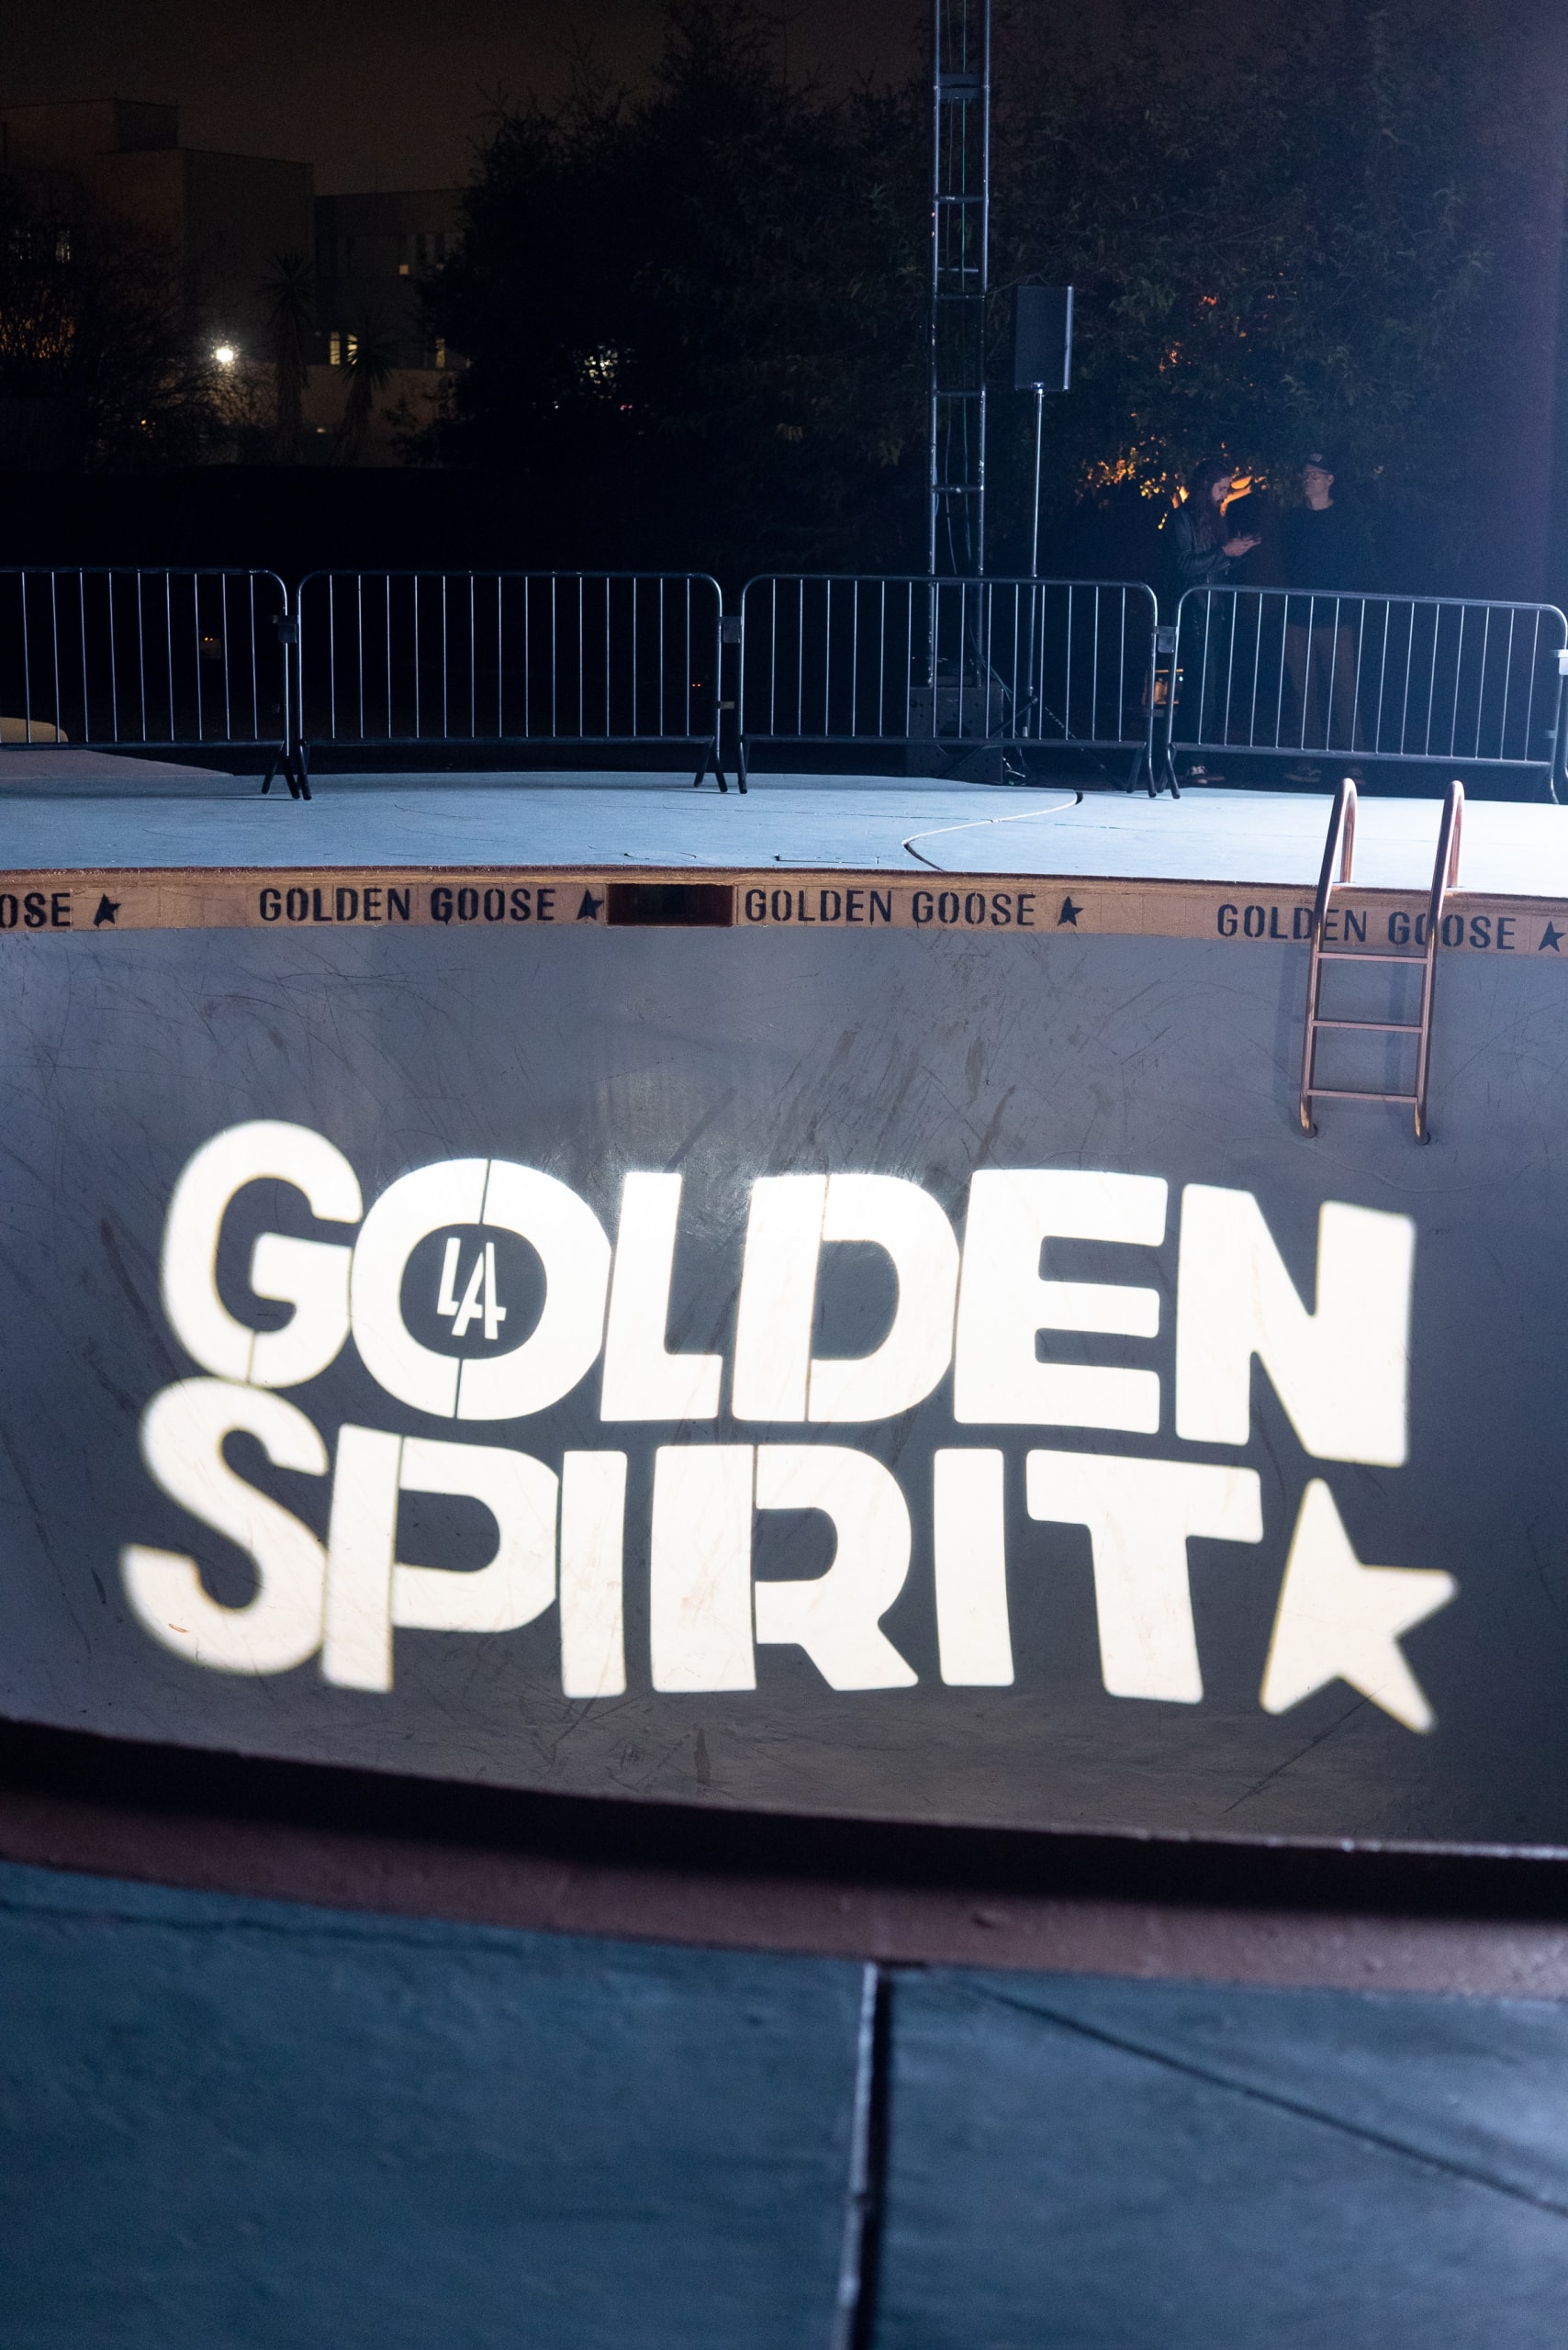 로스앤젤레스에서 펼쳐진, 골든구스 'L.A 골든 스피릿' 이벤트 golden goose the los angeles golden spirit event